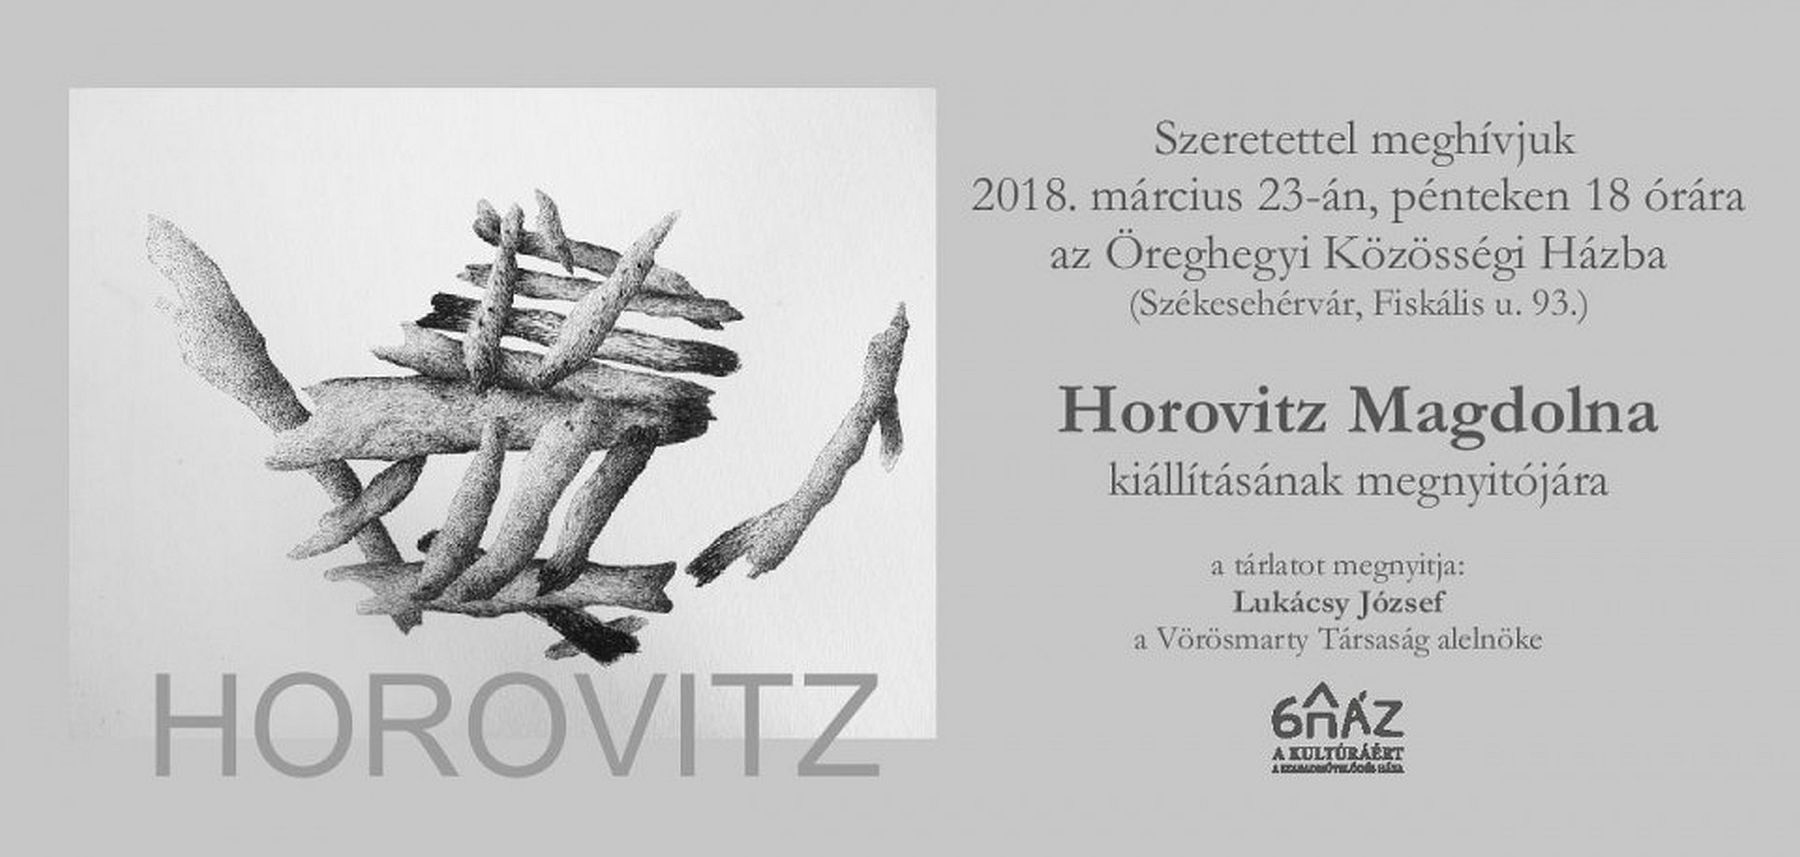 Horovitz Magdolna kiállításának megnyitója az Öreghegyi Közösségi Házban